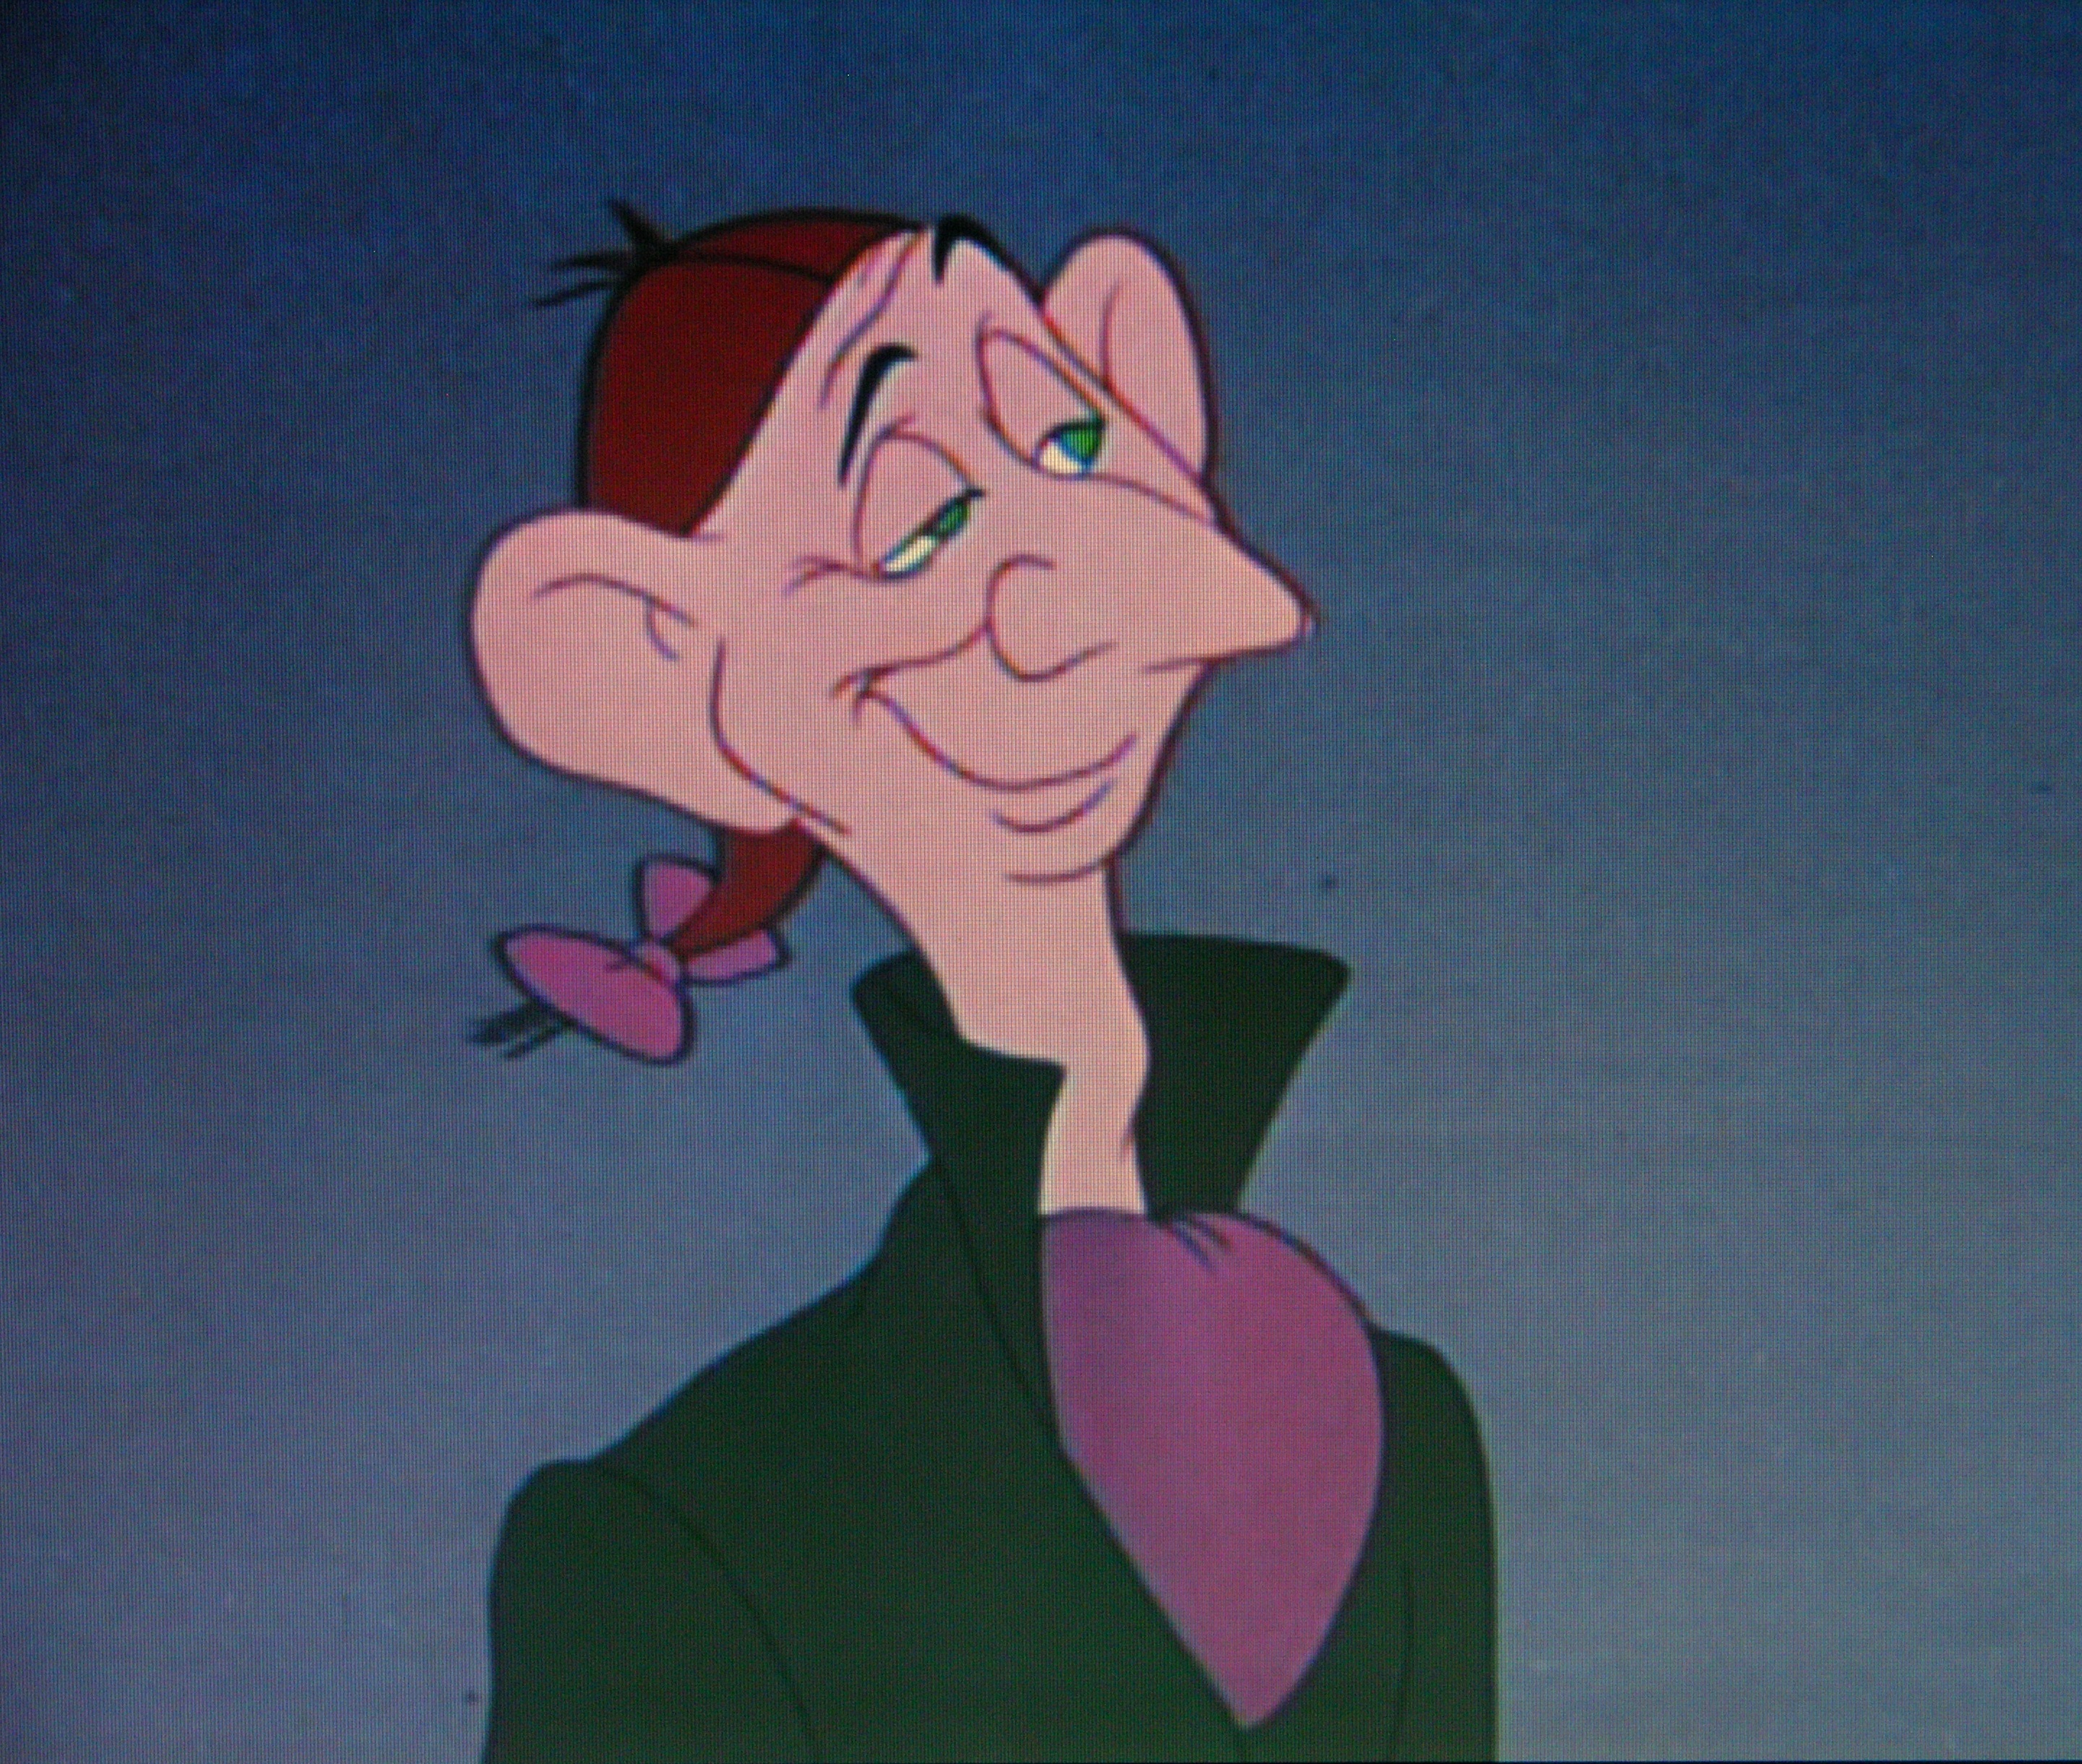 Ichabod Crane | Disney Versus Non-Disney Villains Wiki | Fandom